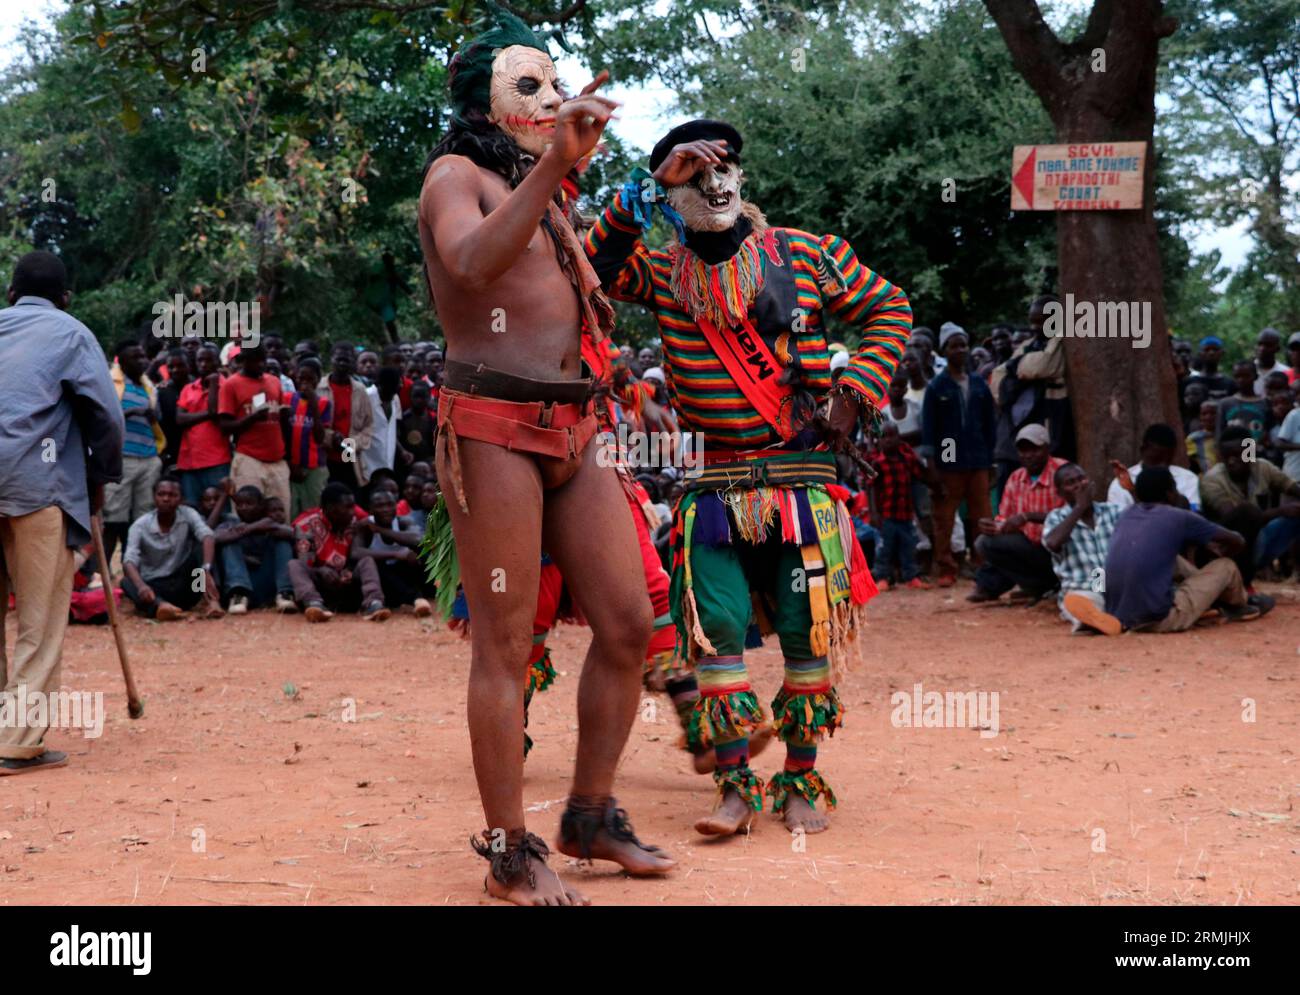 Maskeraden bei einer traditionellen Zeremonie, bei der ein Häuptling in Malingunde, Lilongwe, errichtet wurde. Maskeraden sind die übliche Form der Unterhaltung bei solchen Zeremonien. Malawi. Stockfoto